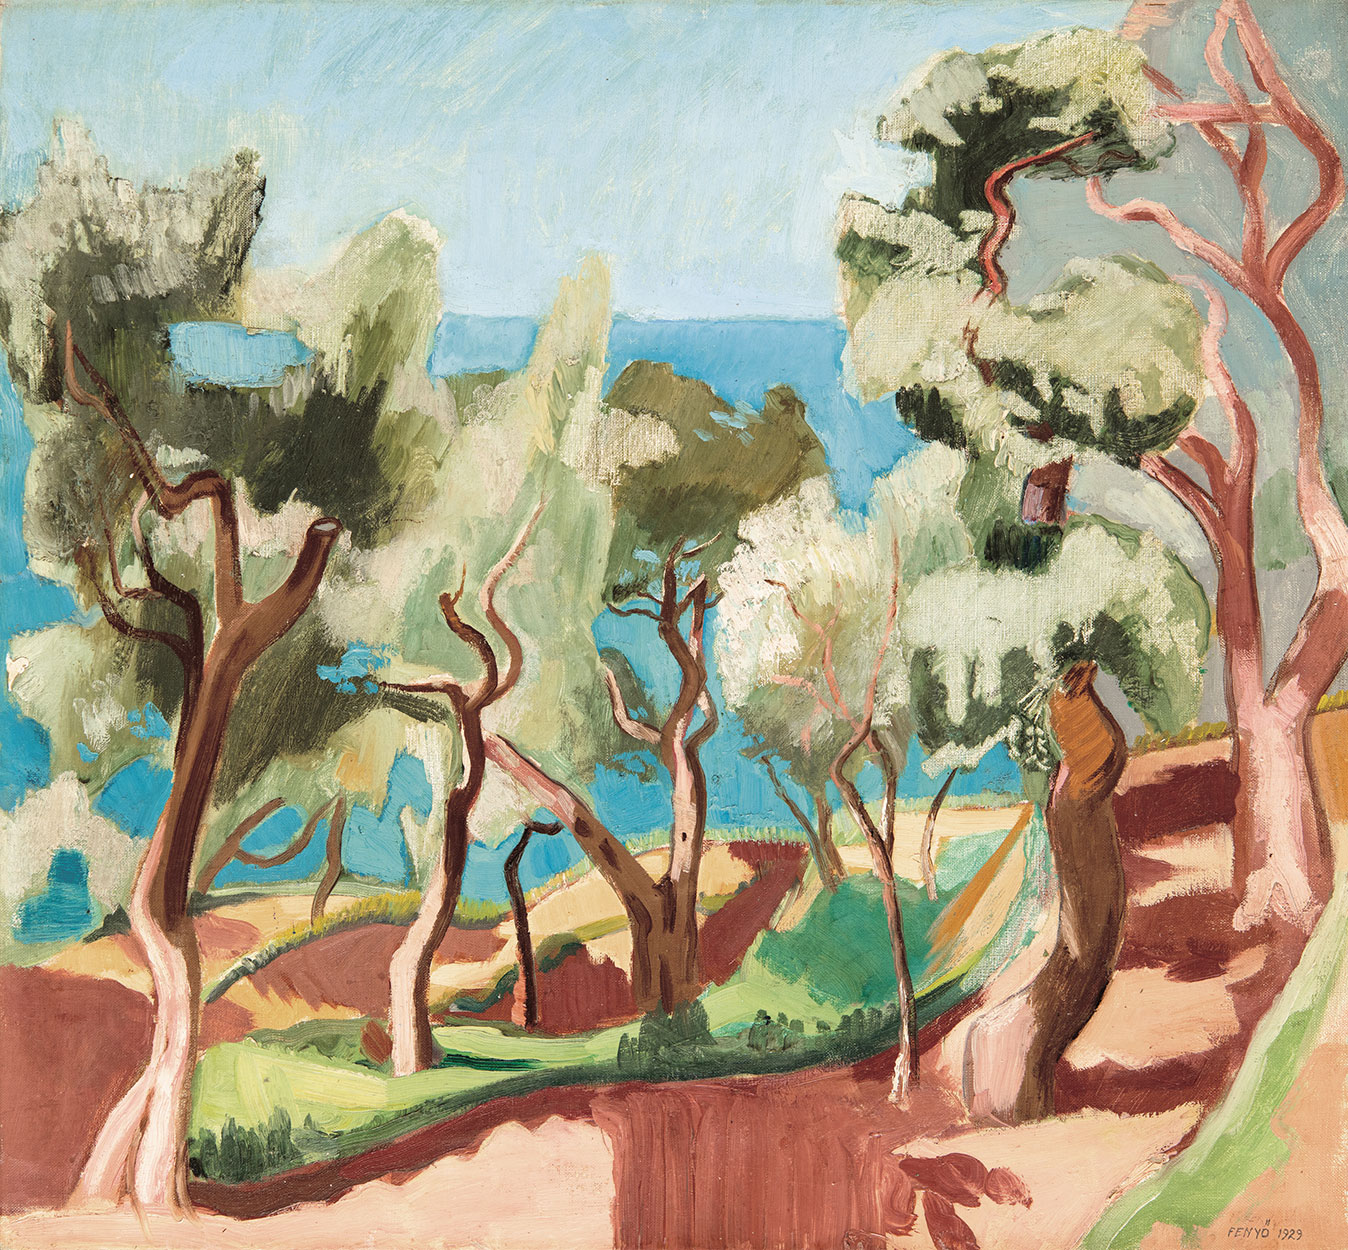 Fenyő György (1904-1978) Mediterranean View, 1929